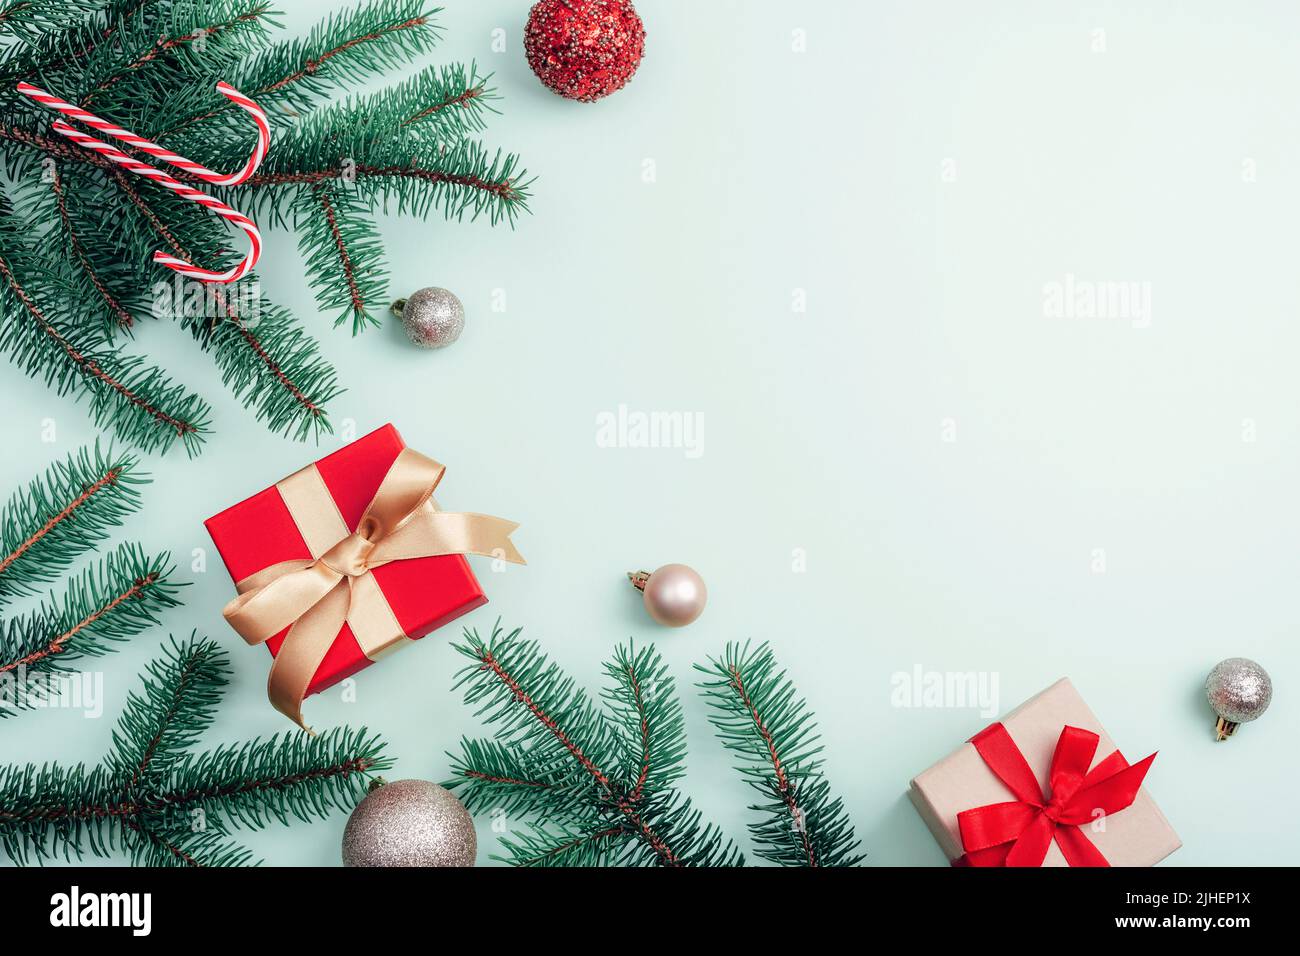 Decorazioni natalizie, scatole regalo, rami di abete, baubles e canna di caramella su sfondo verde chiaro. Vista dall'alto, disposizione piatta, spazio di copia. Foto Stock